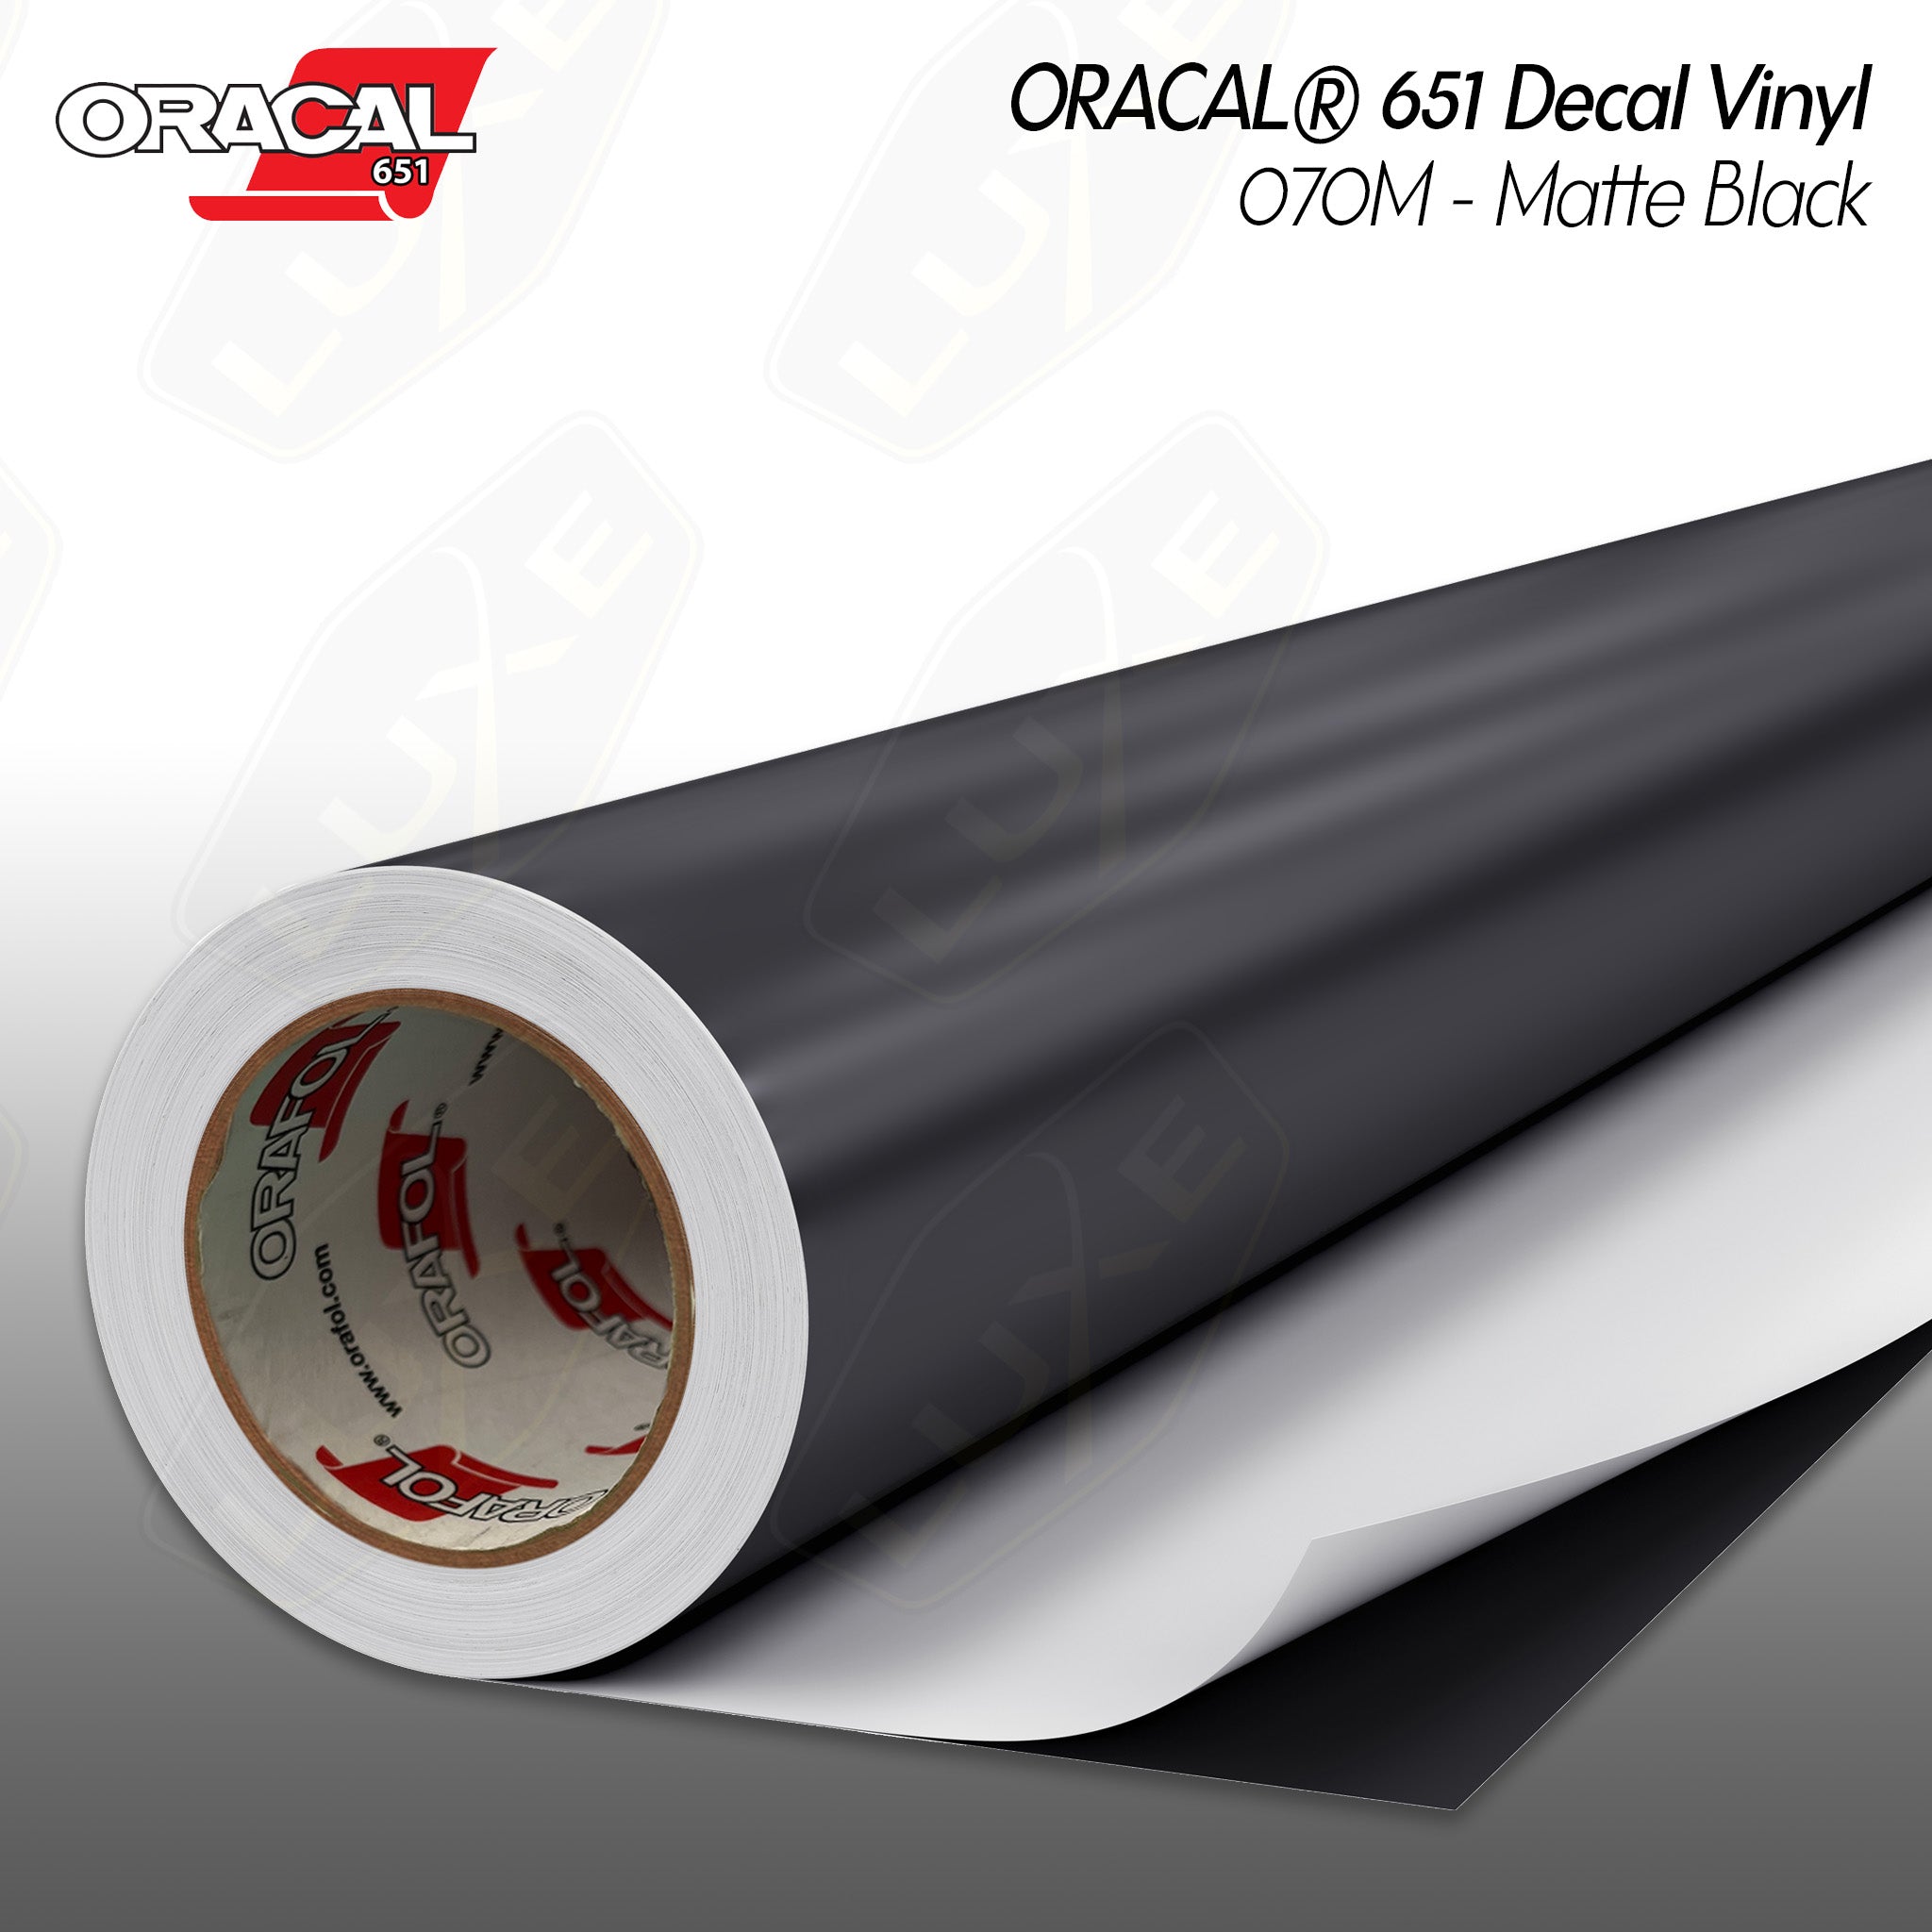 ORACAL® 651 Decal Vinyl - 070M - Matte Black — Luxe Auto Concepts